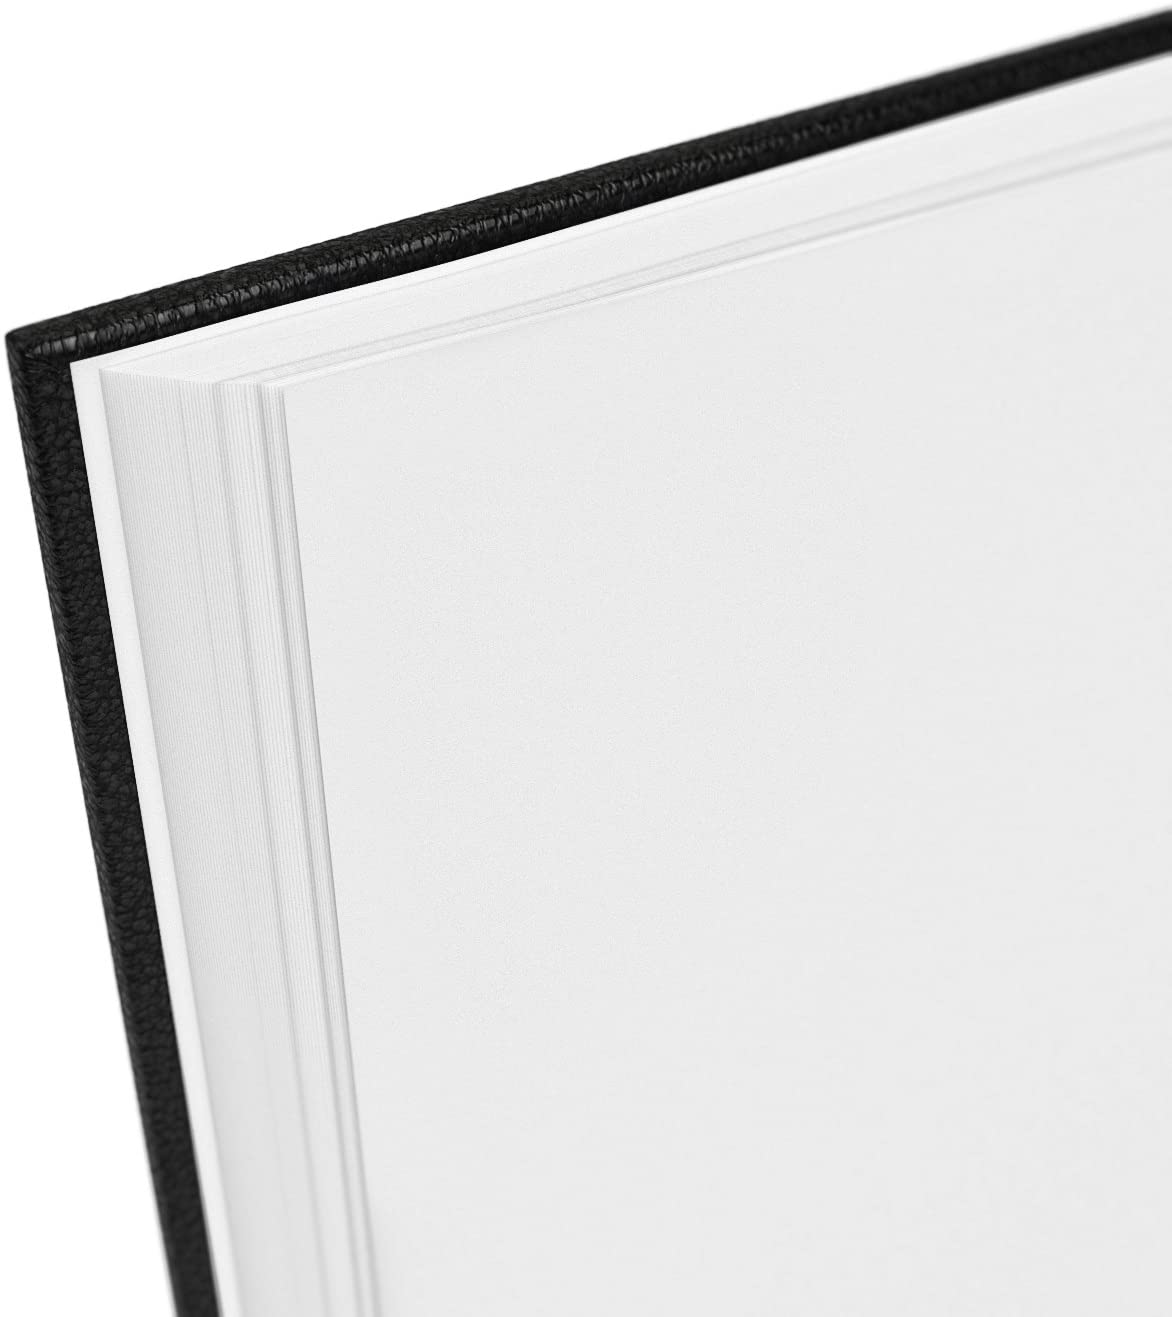 Sketchbook, Hardbound, 8.5" x 11", 110 Sheets - Pack of 2